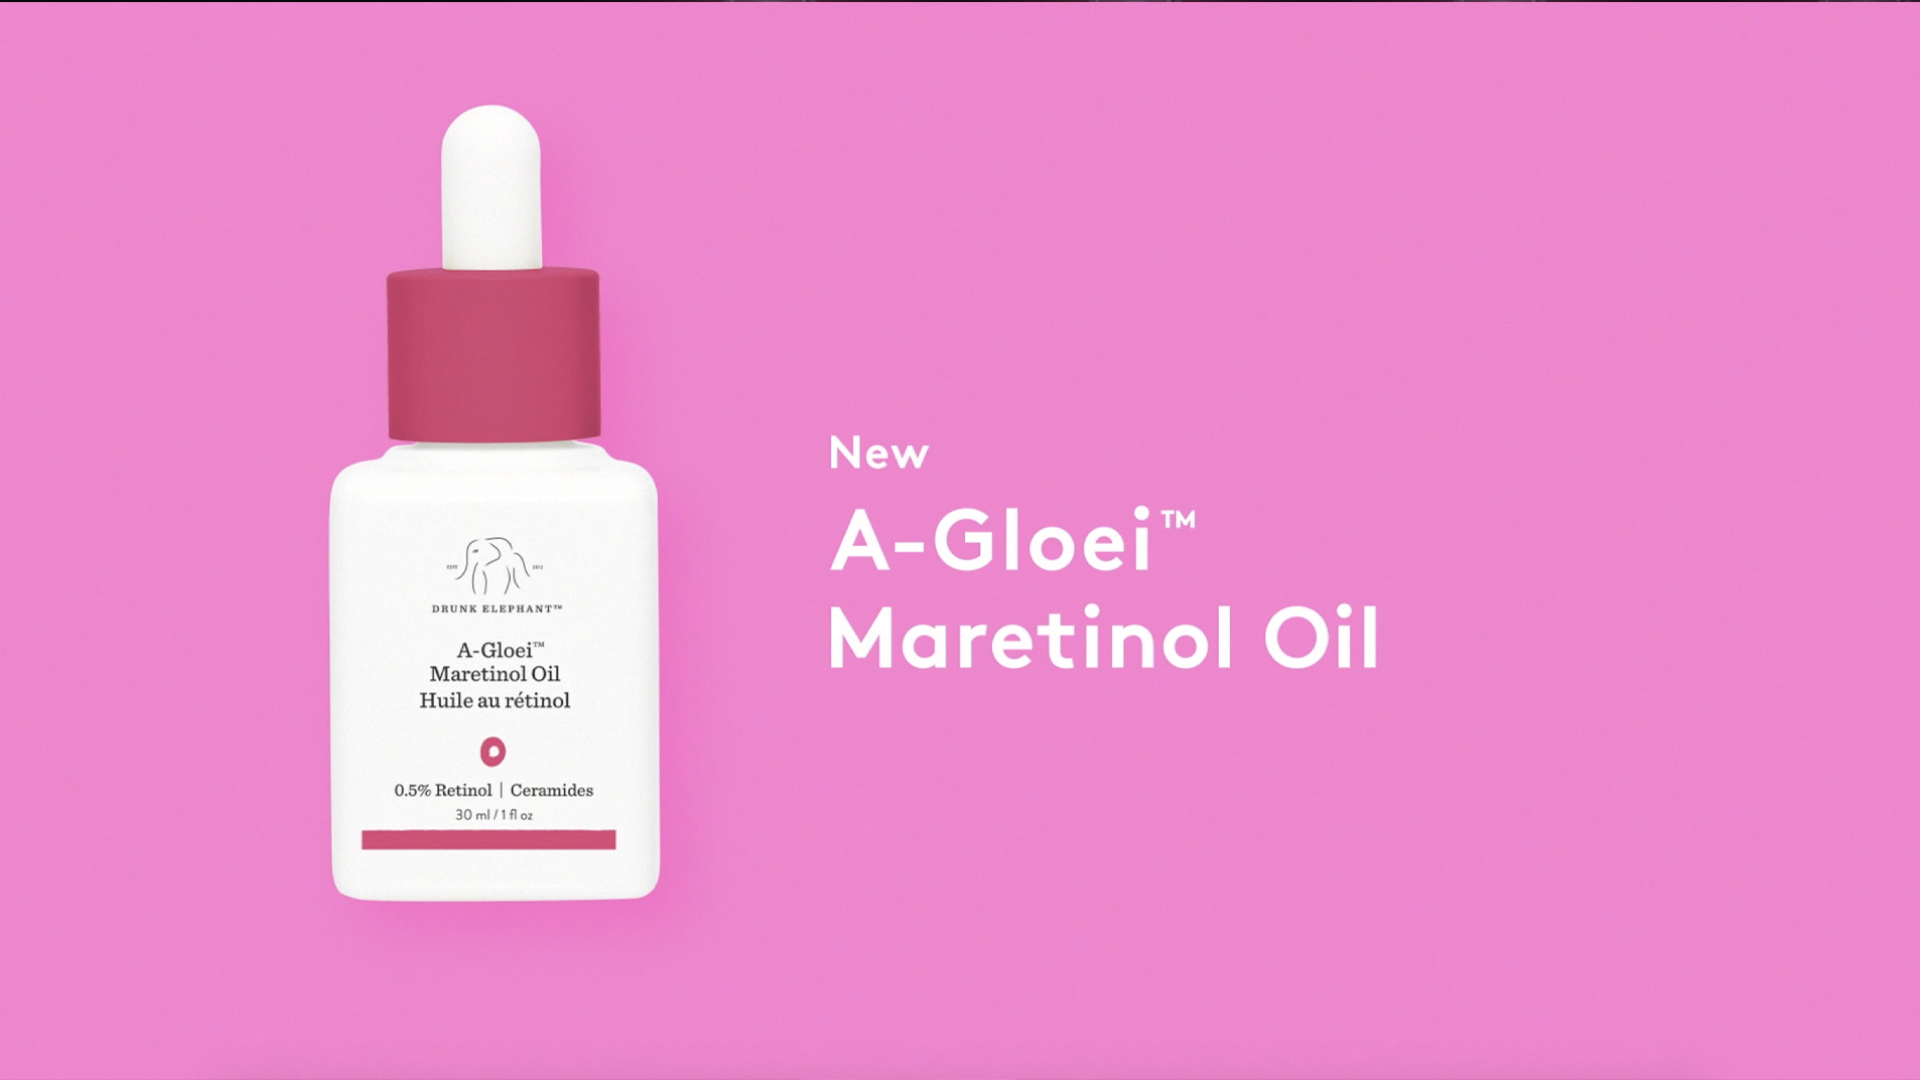 Video, indem die Einführung von A-Gloei Maretinol Oil angekündigt wird